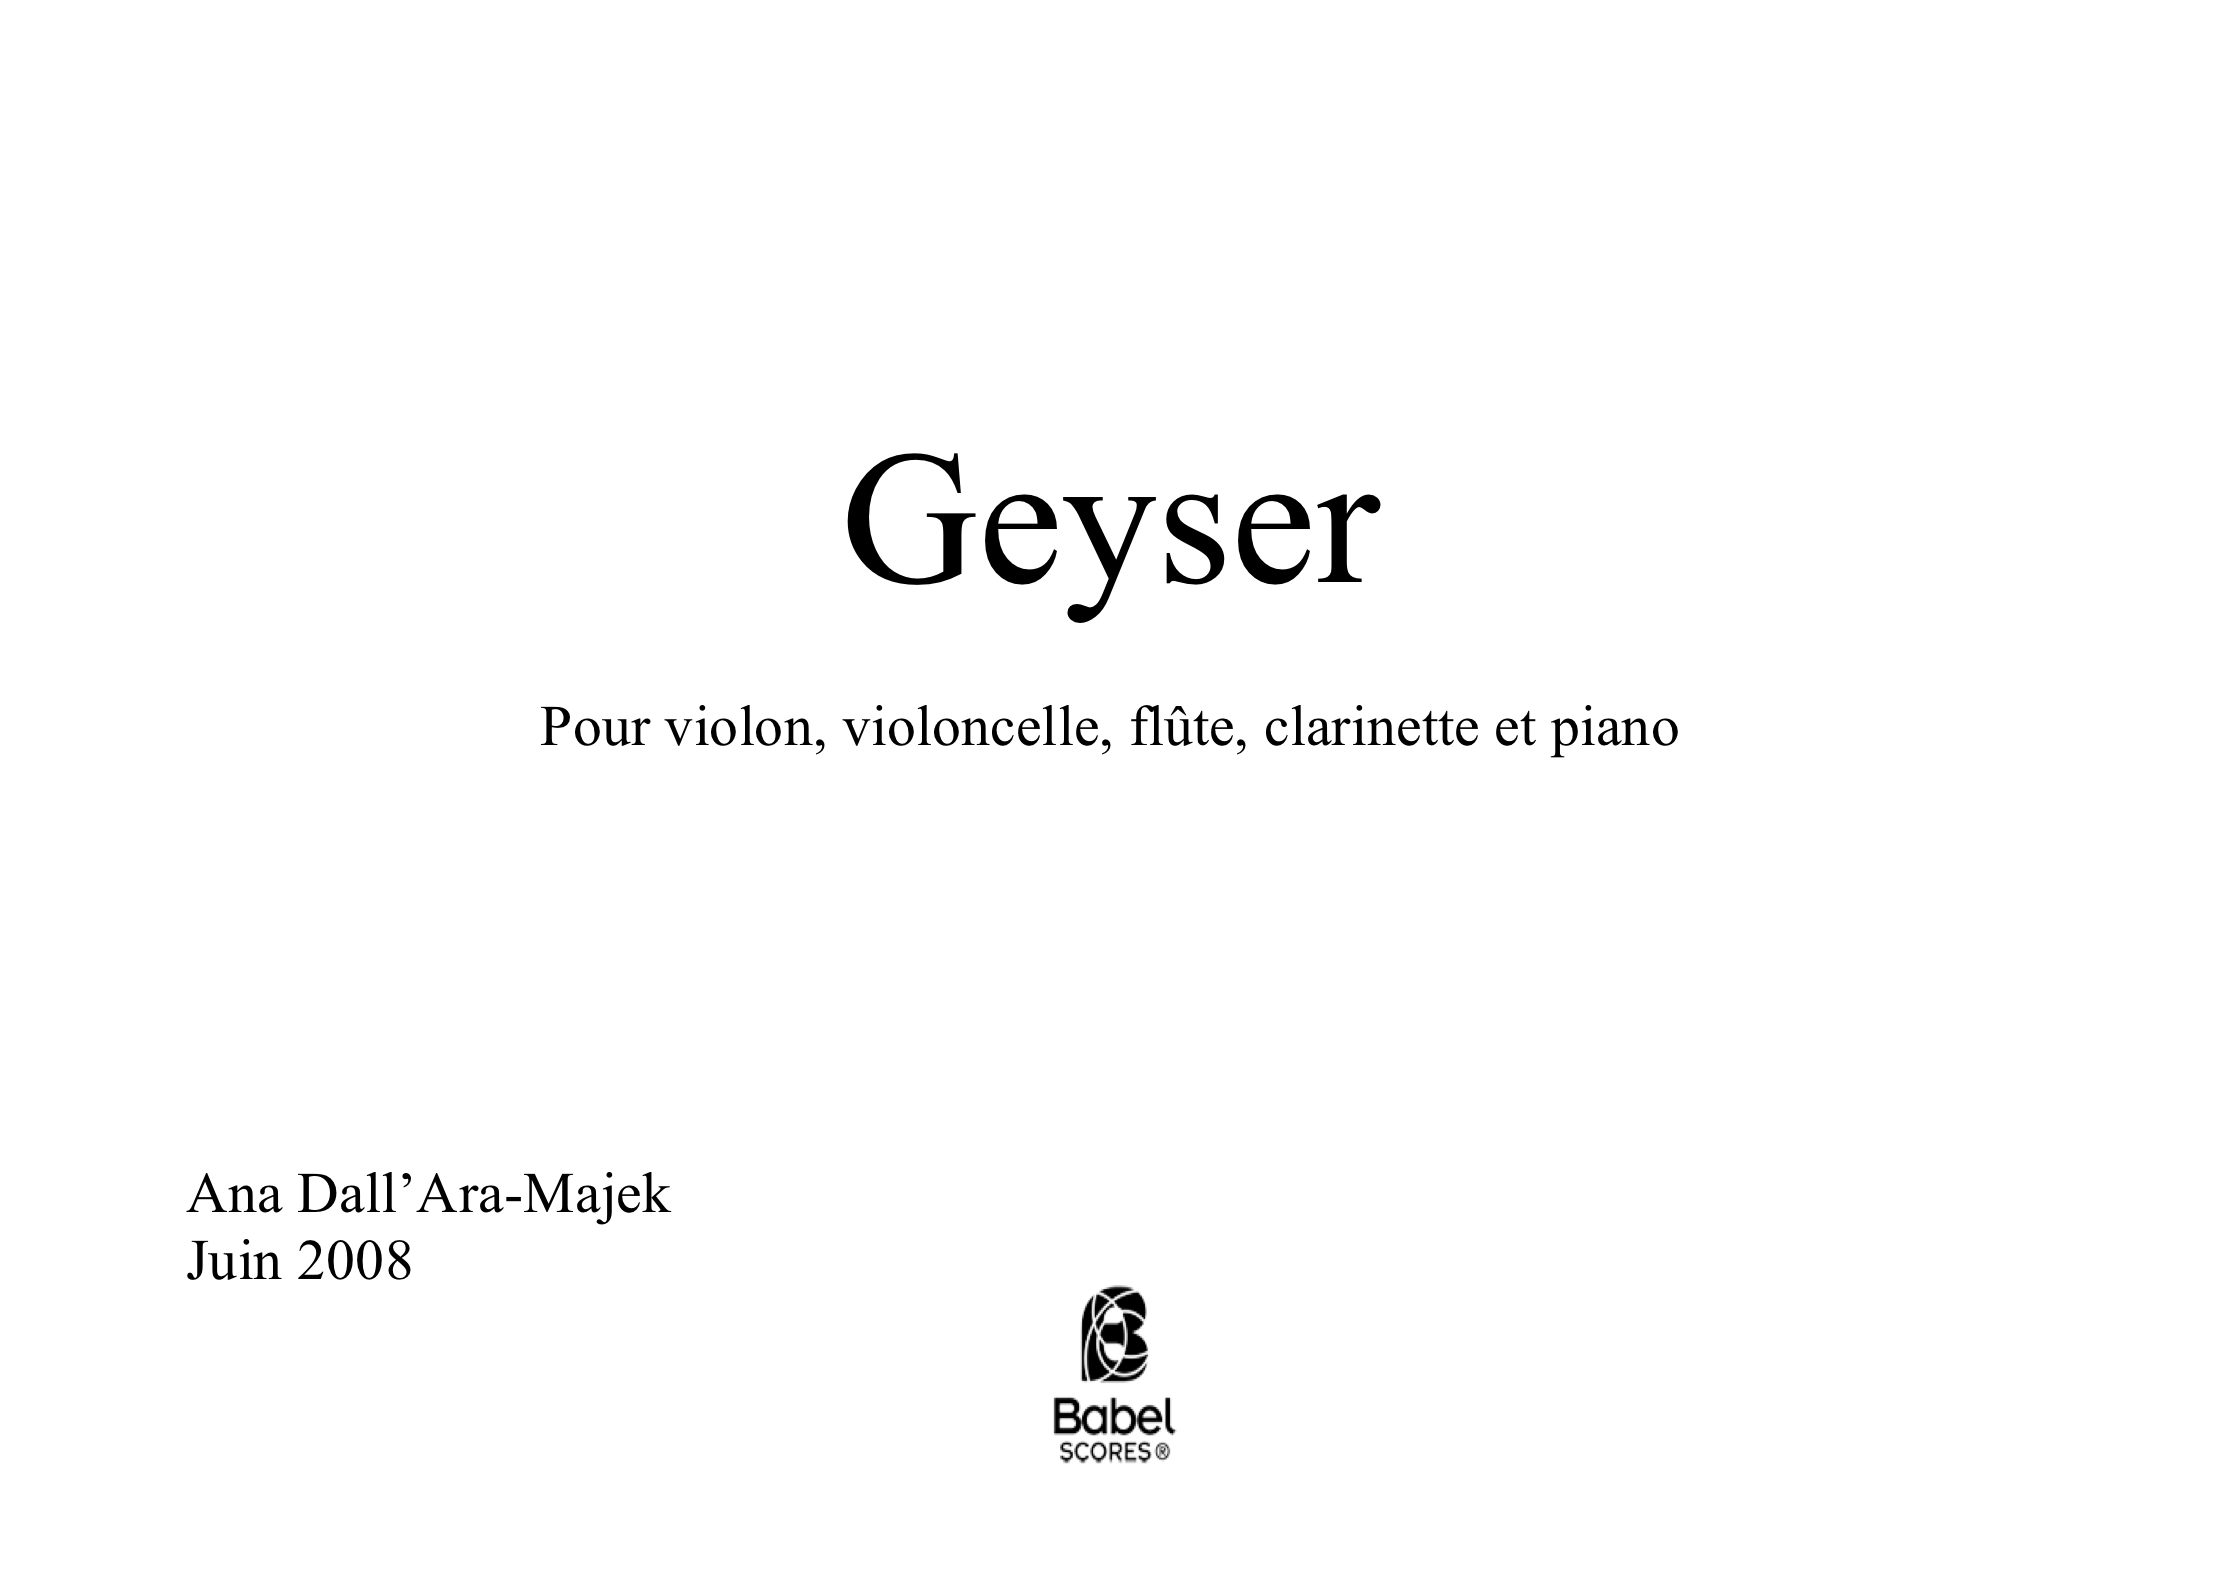 Geyser score